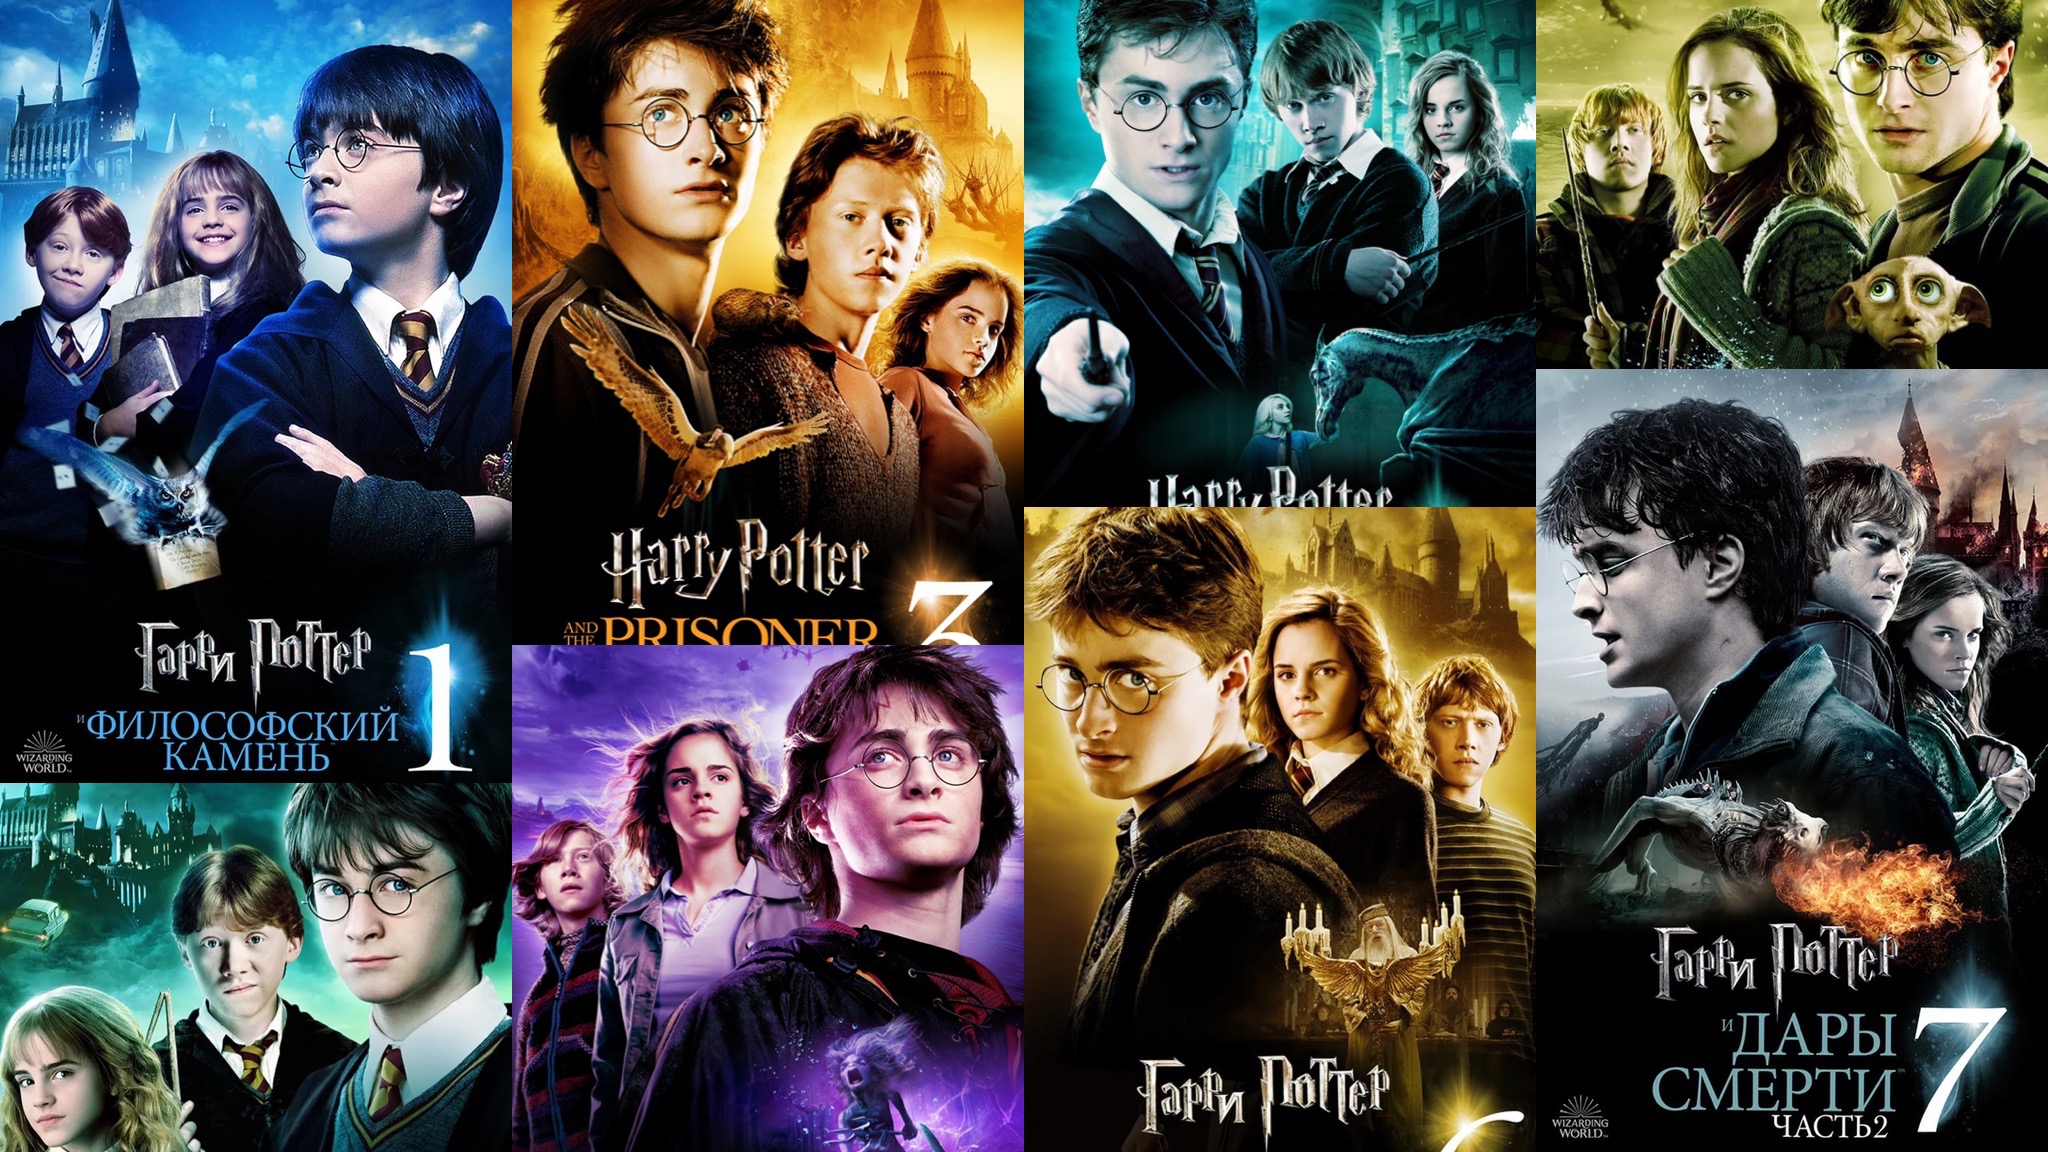 Где теперь смотреть фильмы «Гарри Поттер» и «Фантастические твари» на русском языке